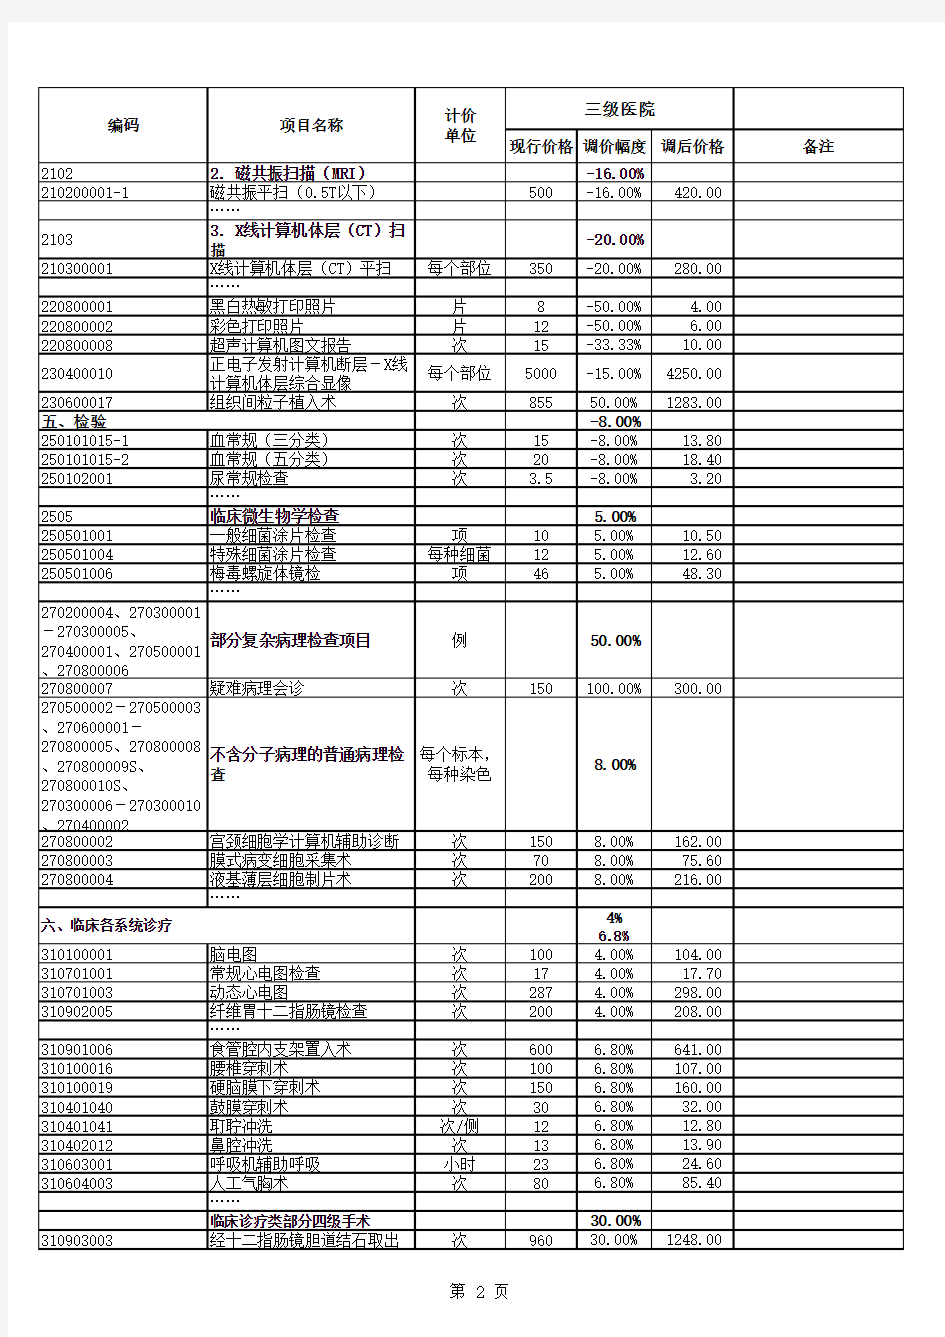 2017广州地区公立医院基本医疗服务价格调整表